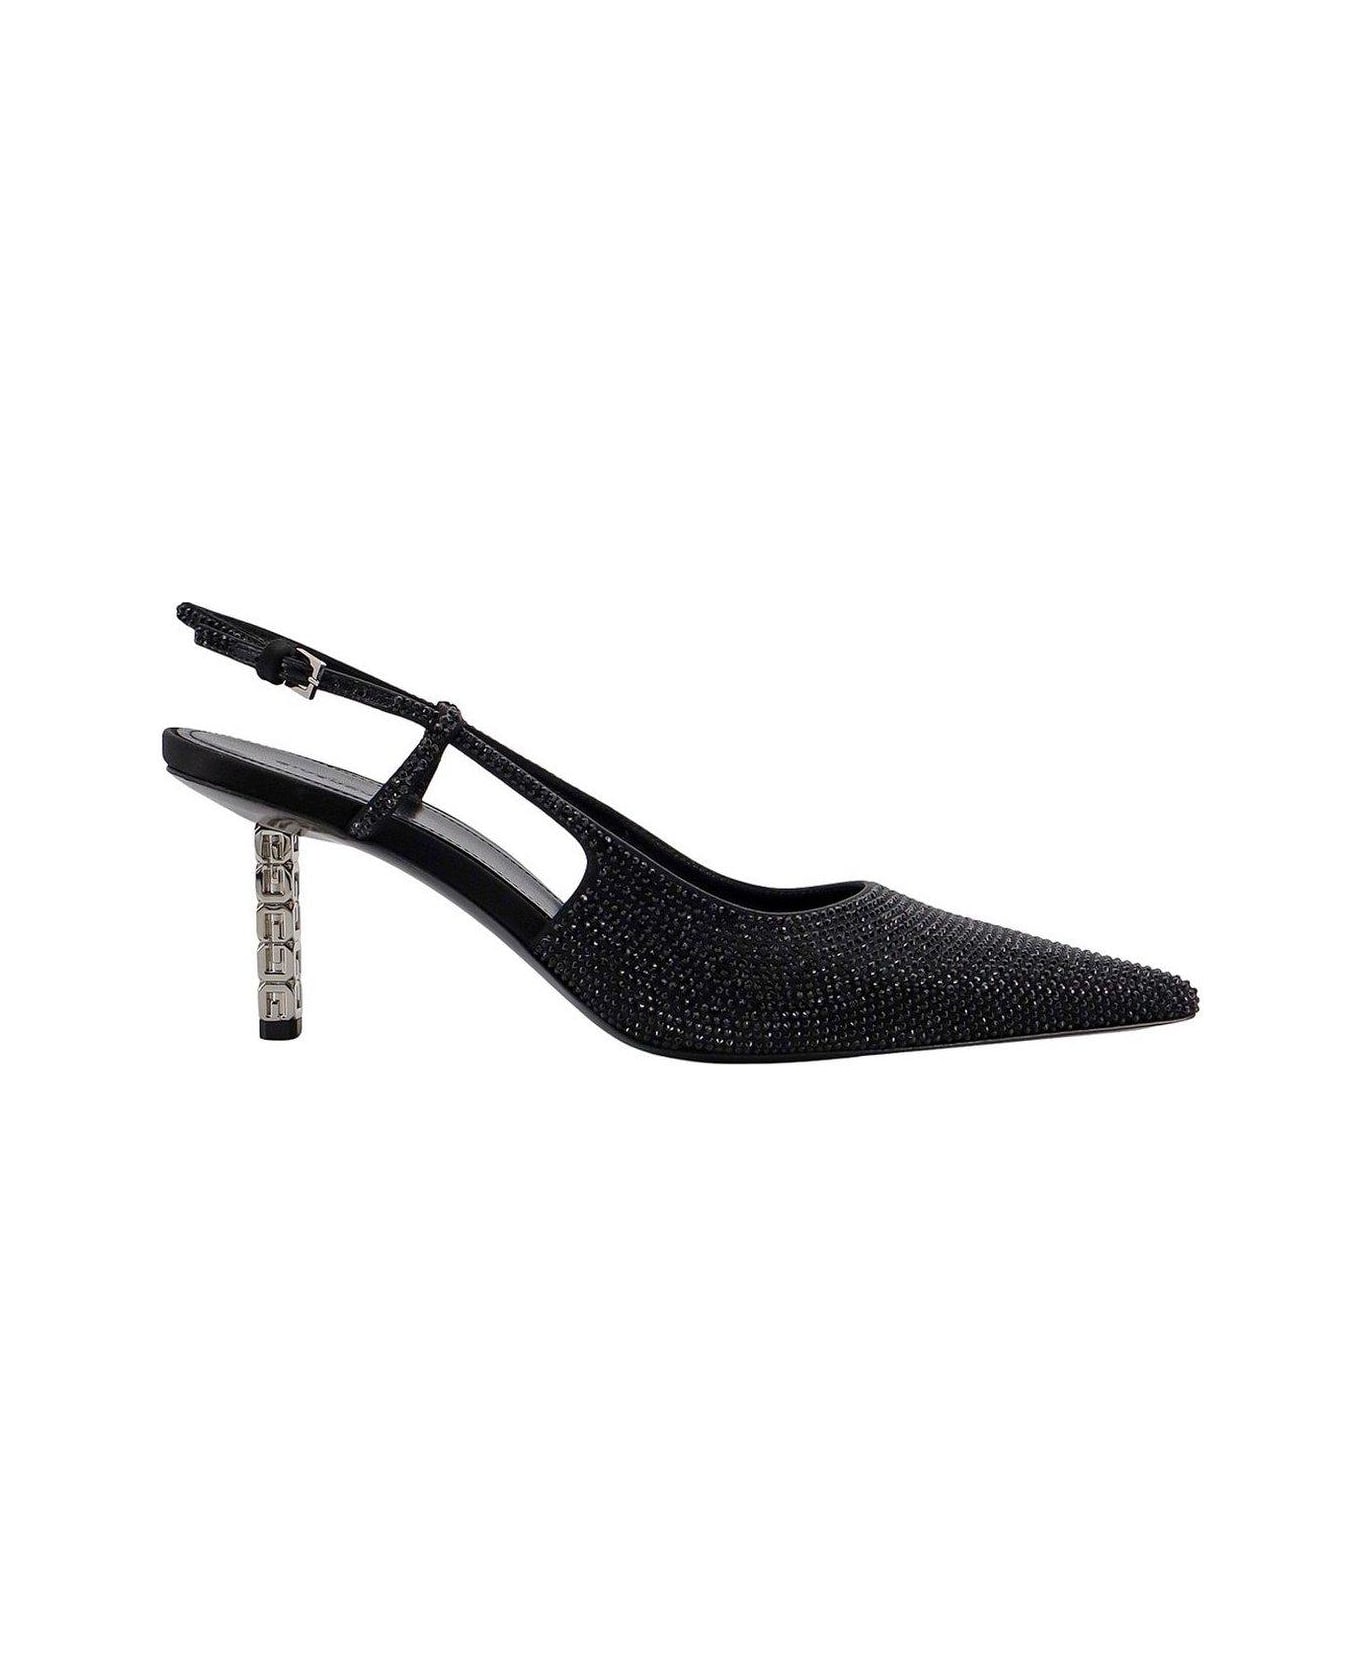 Givenchy Embellished Pointed-toe Slingback Pumps - Black